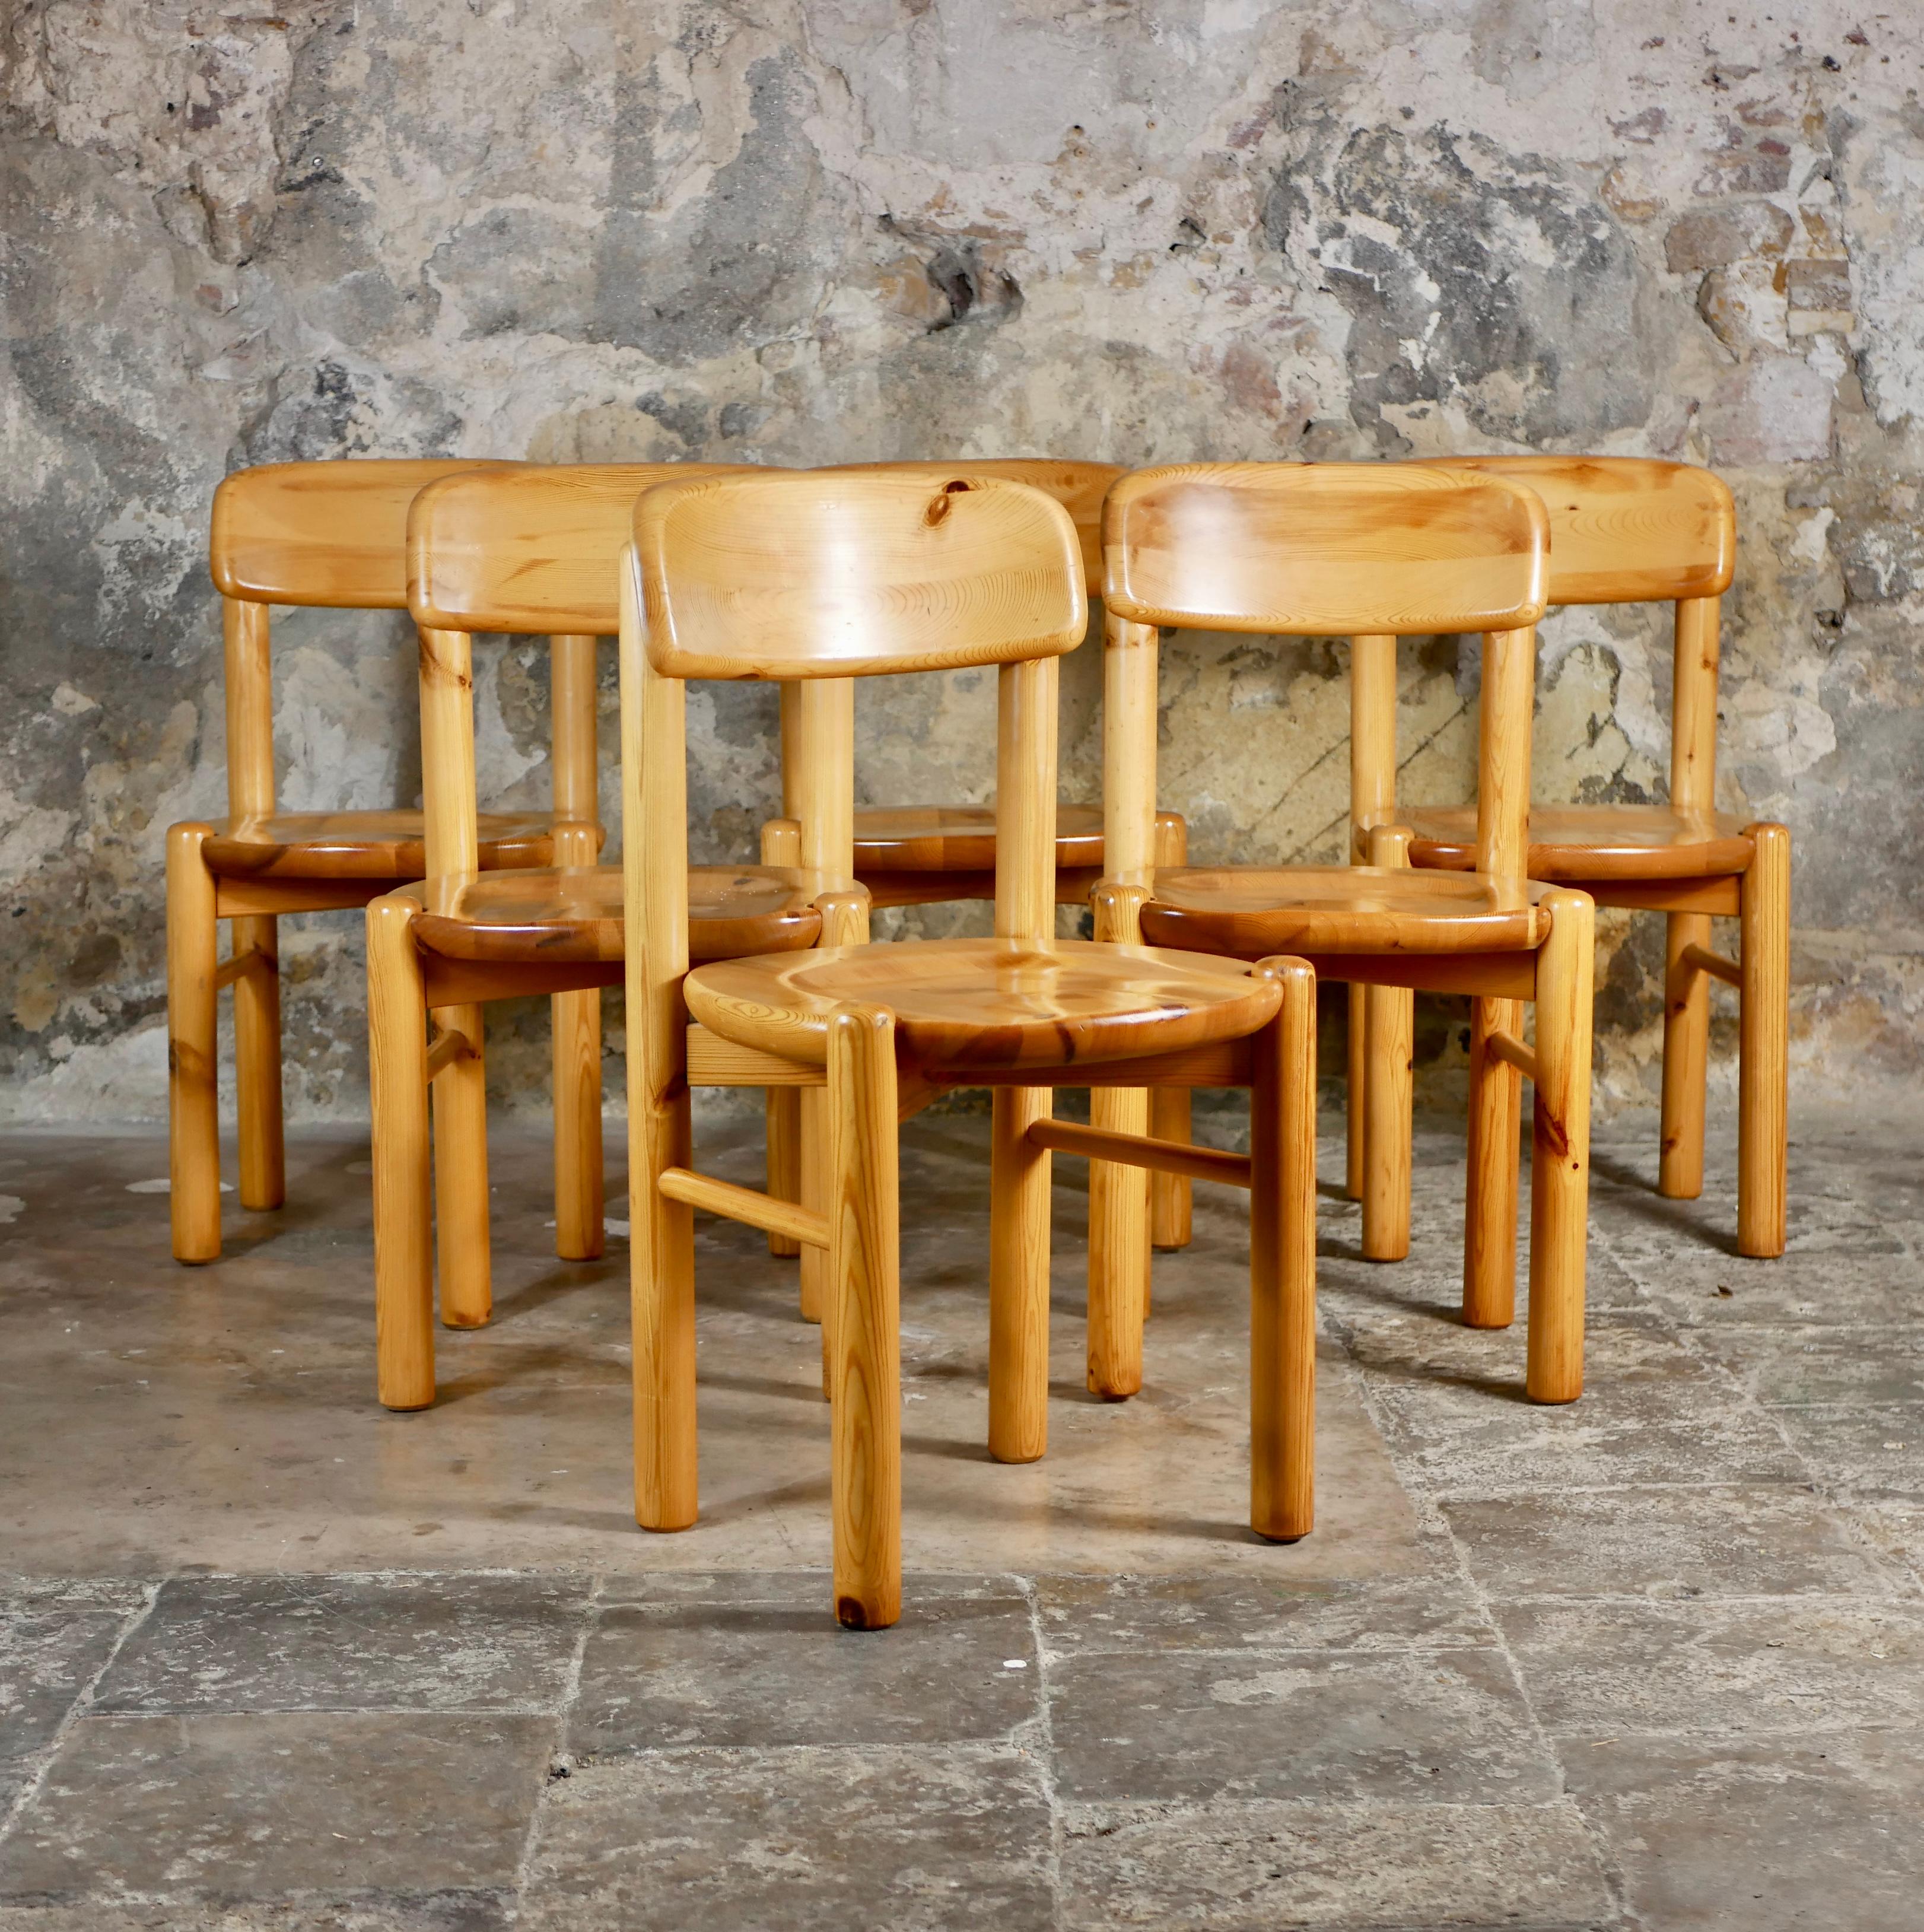 Magnifique ensemble de 6 chaises en bois de pin conçues par Rainer Daumiller dans les années 1960 pour la scierie Hirtshals, fabriquées au Danemark.
Lignes arrondies, super robuste, adorable, une de nos chaises préférées.
Bon état général, traces du